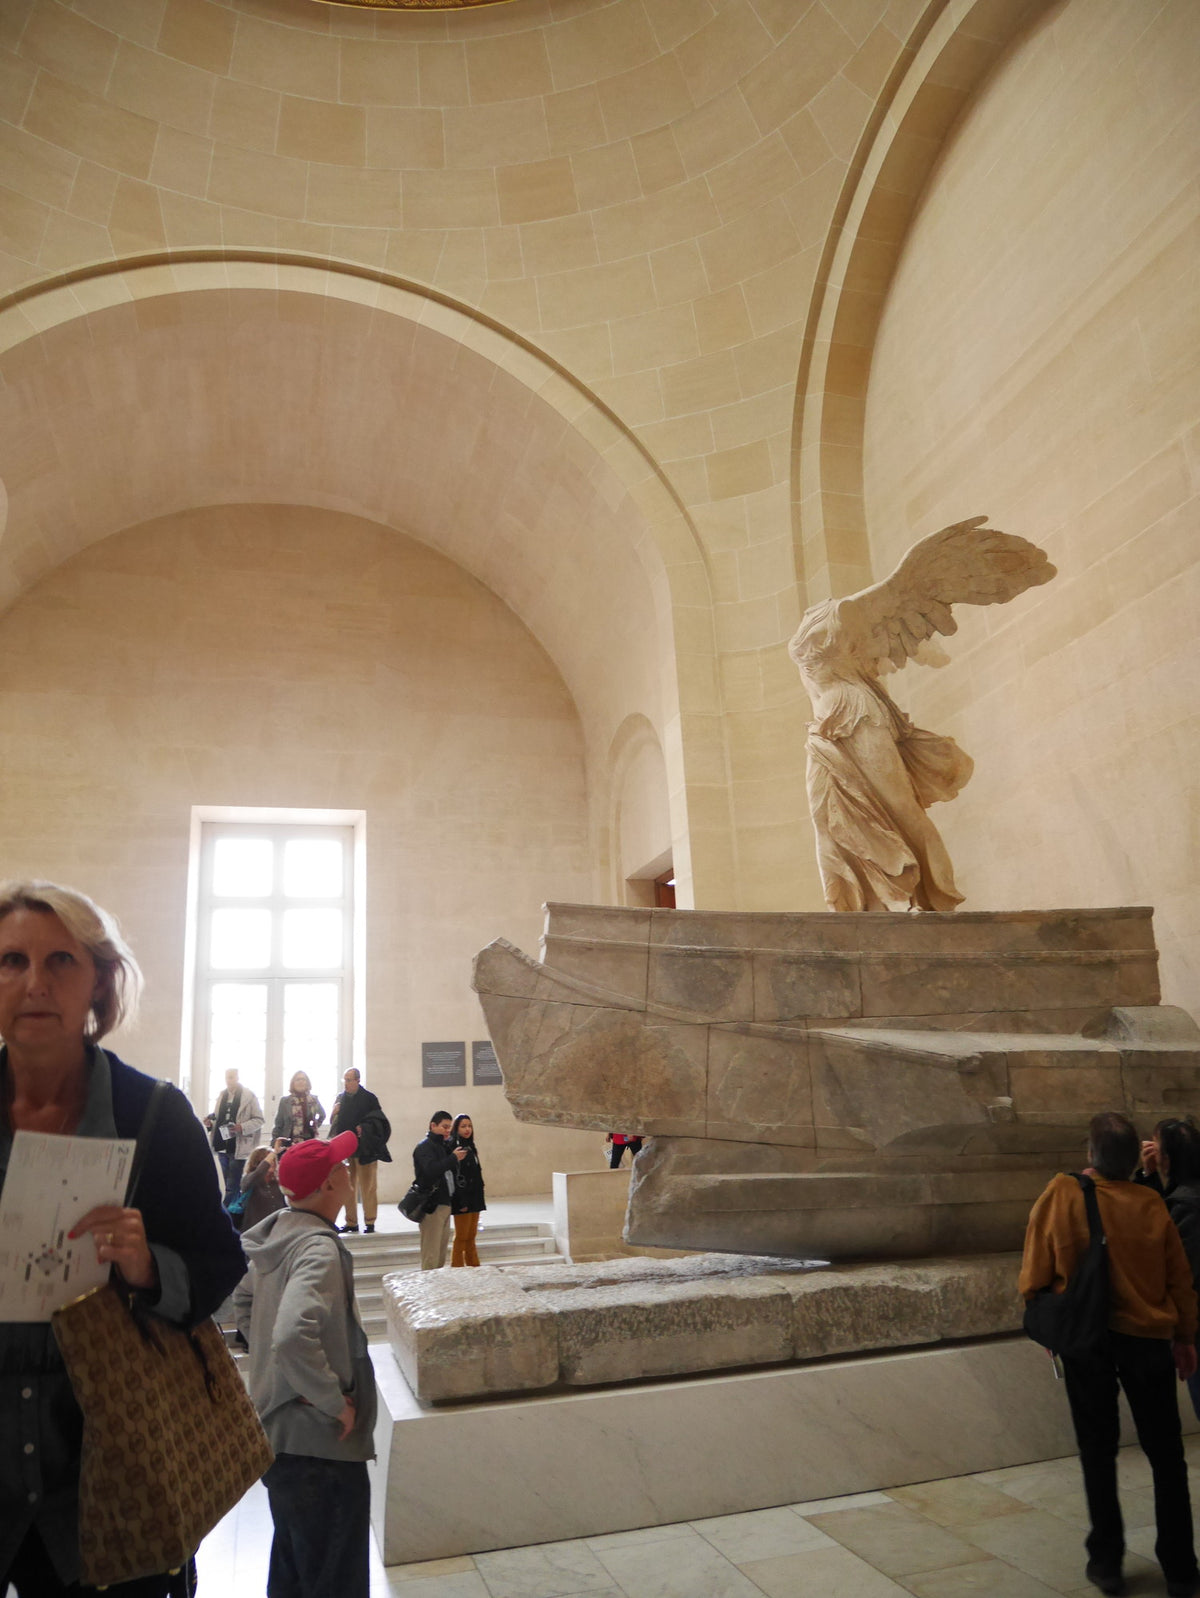 ルーヴル美術館には数えきれないほどの名画や彫刻が展示されています。名画の１つ、ナポレオン1世の戴冠式